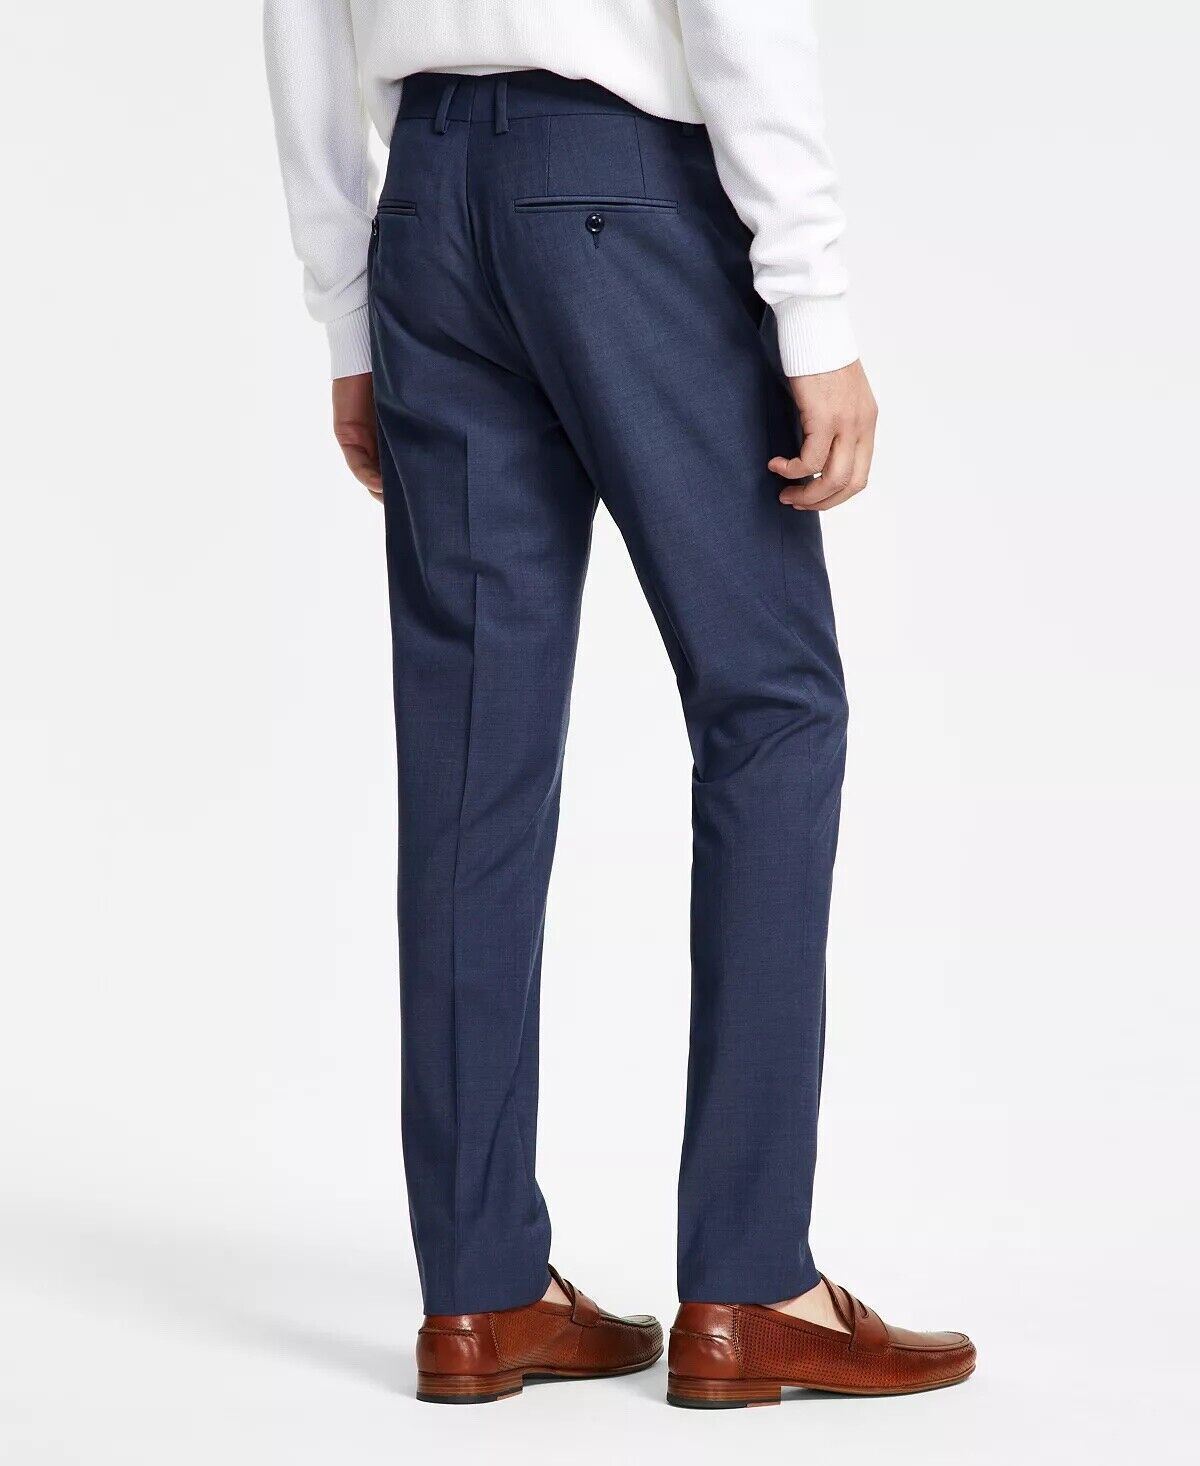 Bar Iii Men's Slim-Fit Solid Suit Dress Pants Blue 32 x 34 Flat Front Pant